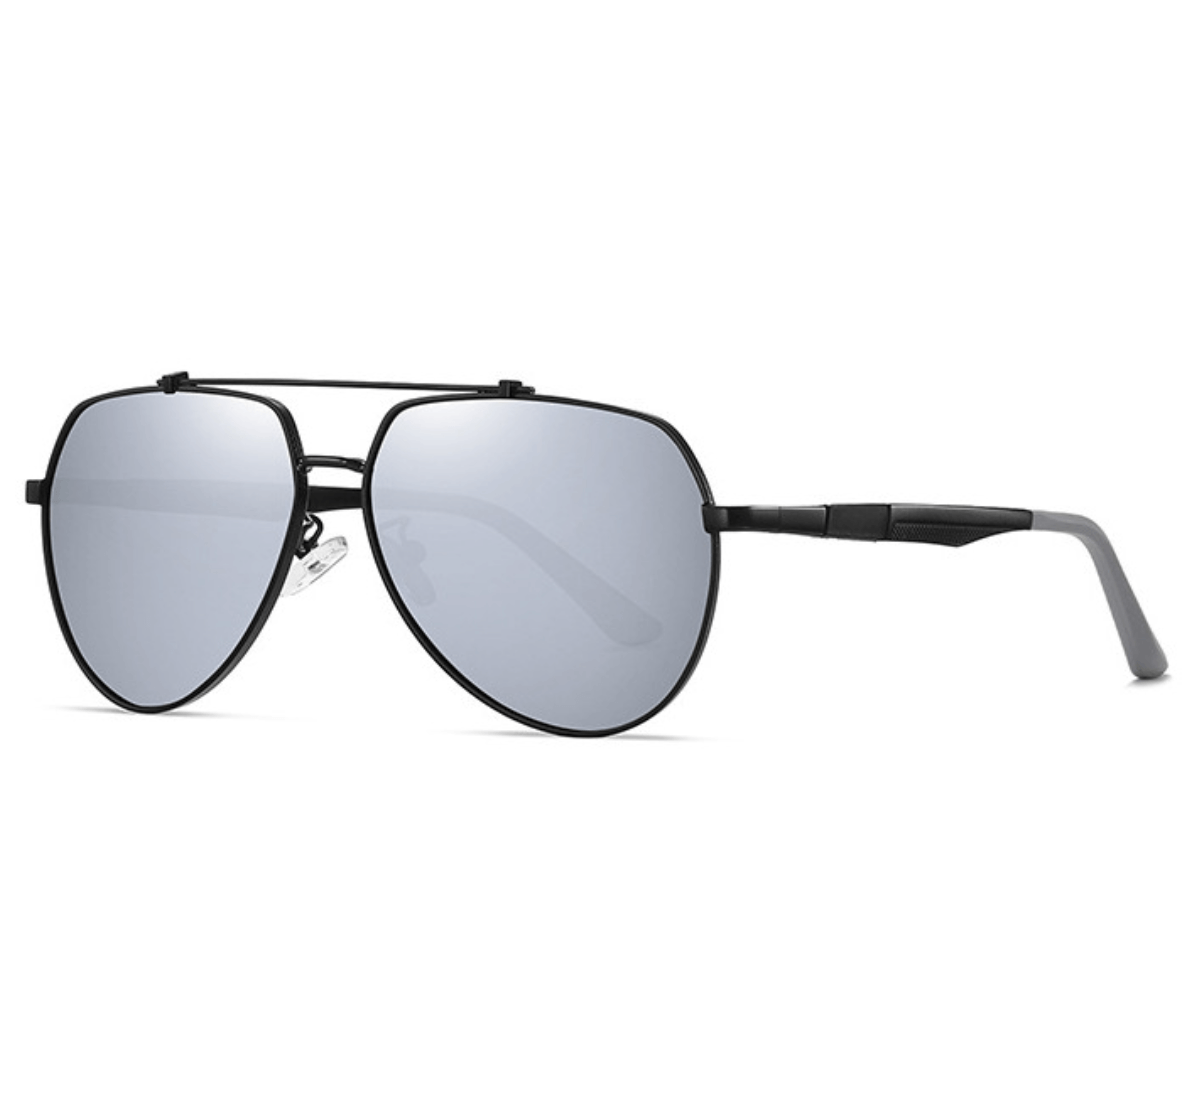 custom made aviator sunglasses, custom mirrored aviator sunglasses, private label sunglasses manufacturers, custom sunglasses manufacturers